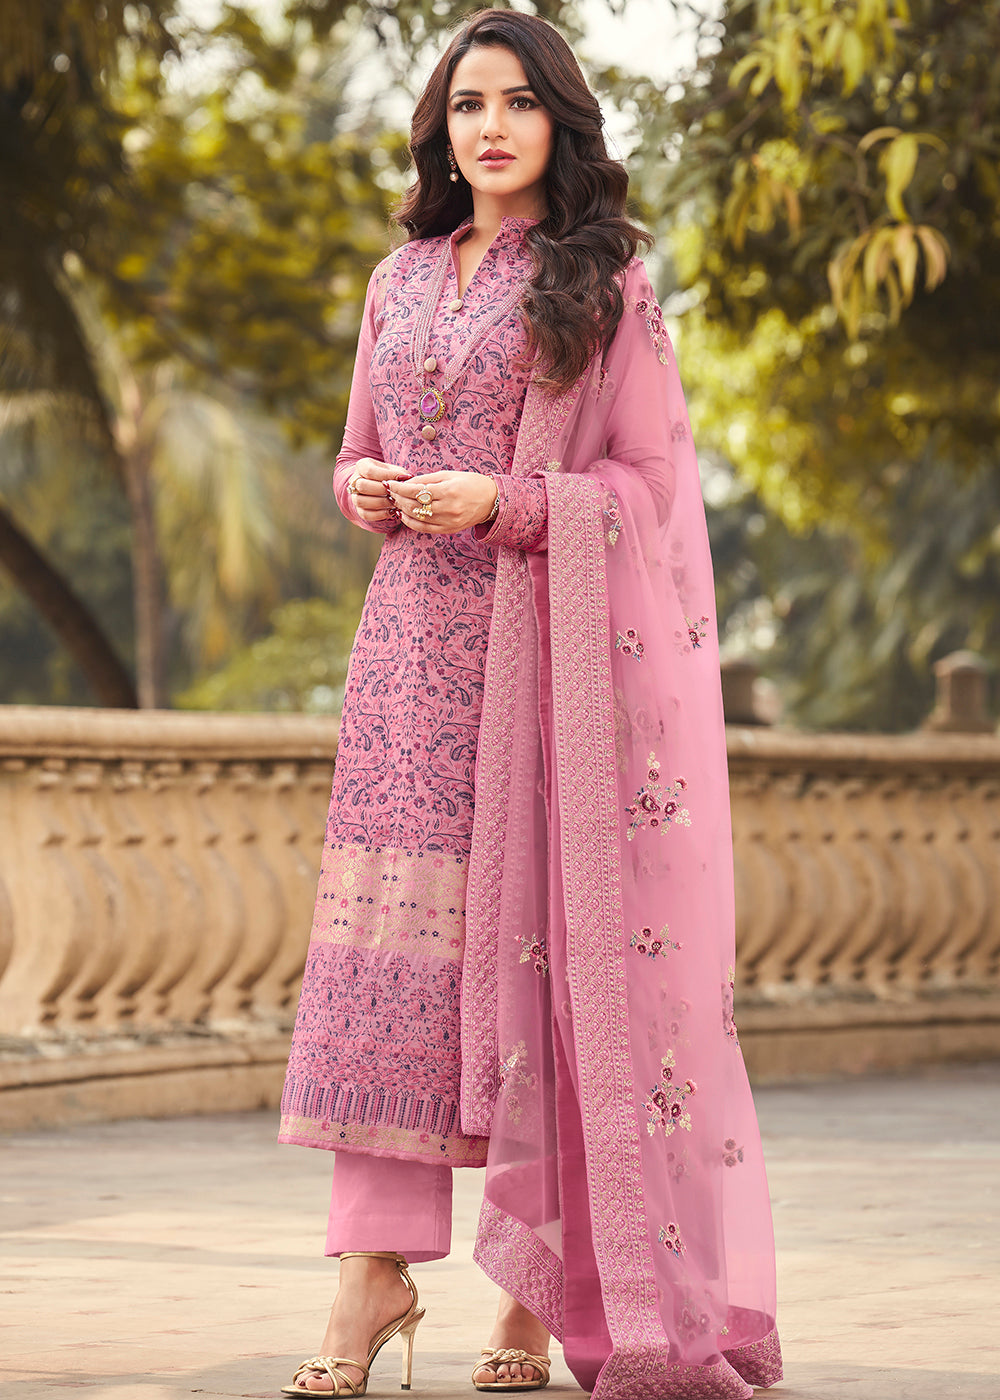 Buy Now Rose Pink Viscose Jacquard Pant Style Salwar Kurta Set Online in USA, UK, Canada & Worldwide at Empress Clothing.